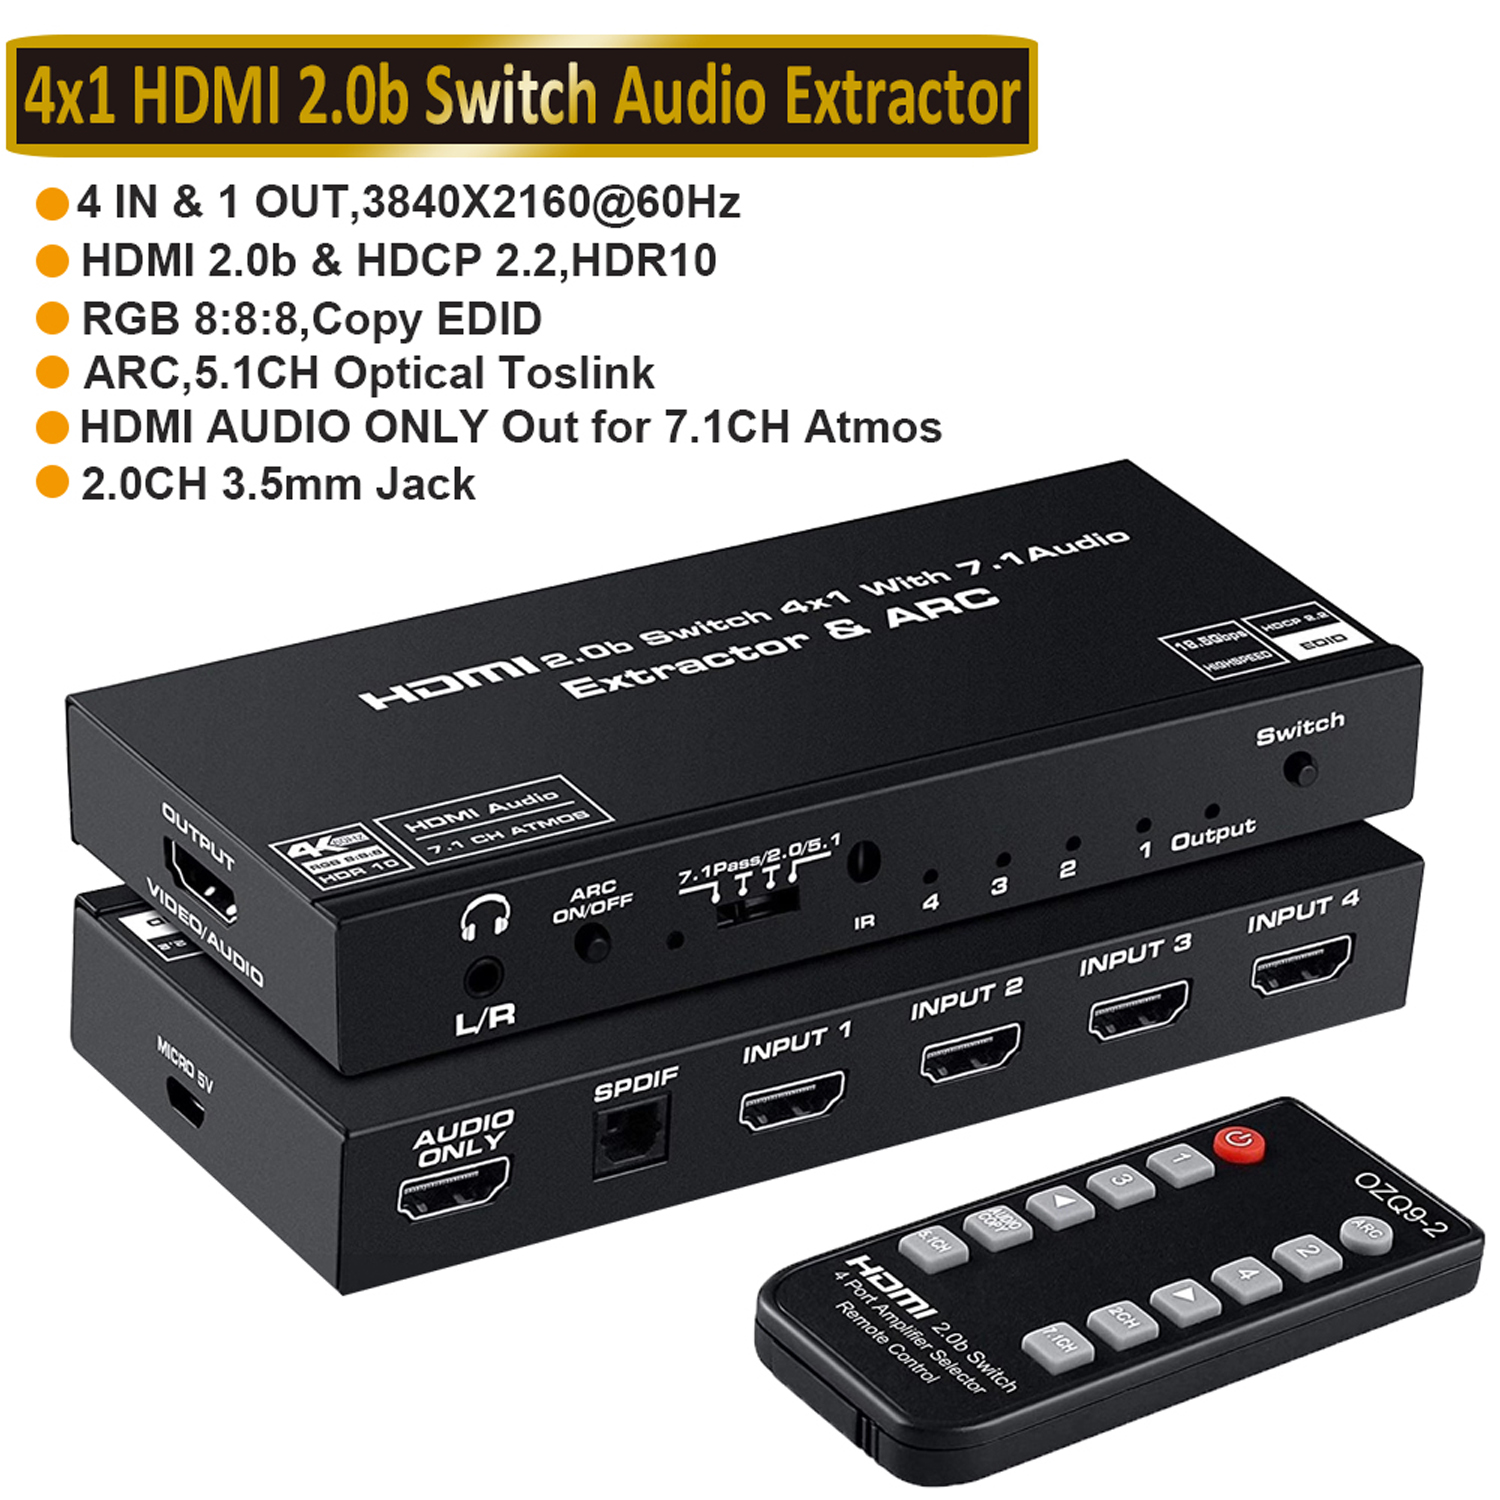 krølle Stærk vind torsdag ESTONE 4 Port 4K HDMI Switch with Optical & 3.5mm AUX Audio Audio Extractor  Out, 4x1 HDMI Switcher Audio Extractor Splitter Support 4K@60Hz,  1080P@120Hz, ARC, HDCP 2.2, HDR10, Dolby 7.1 Atoms Audio/Video